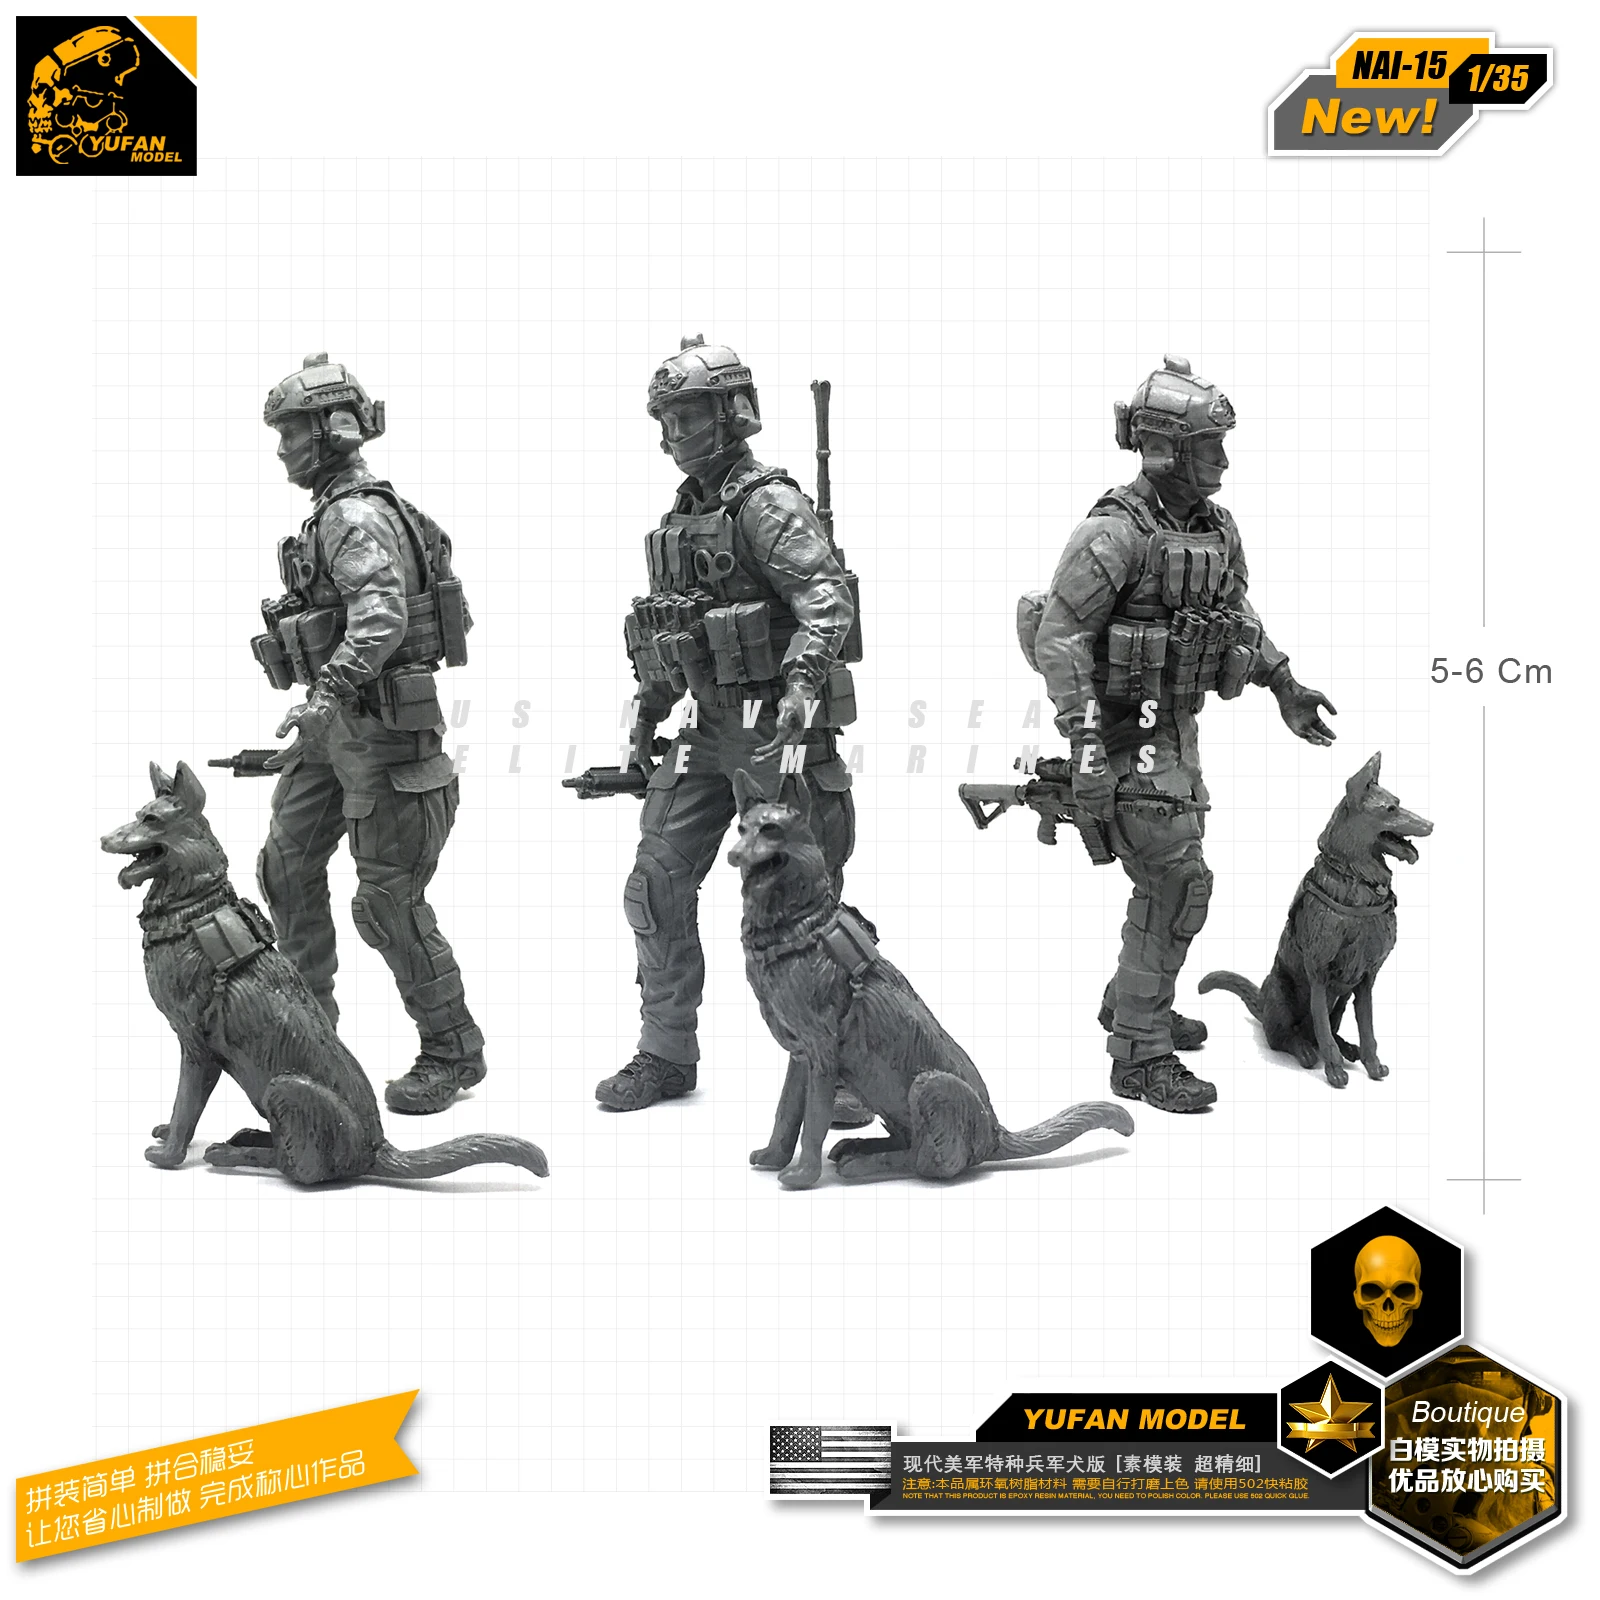 Yufan модель 1/35 фигурка модель наборы современный Спецназ США и собачья Смола Солдат модель Nai-15